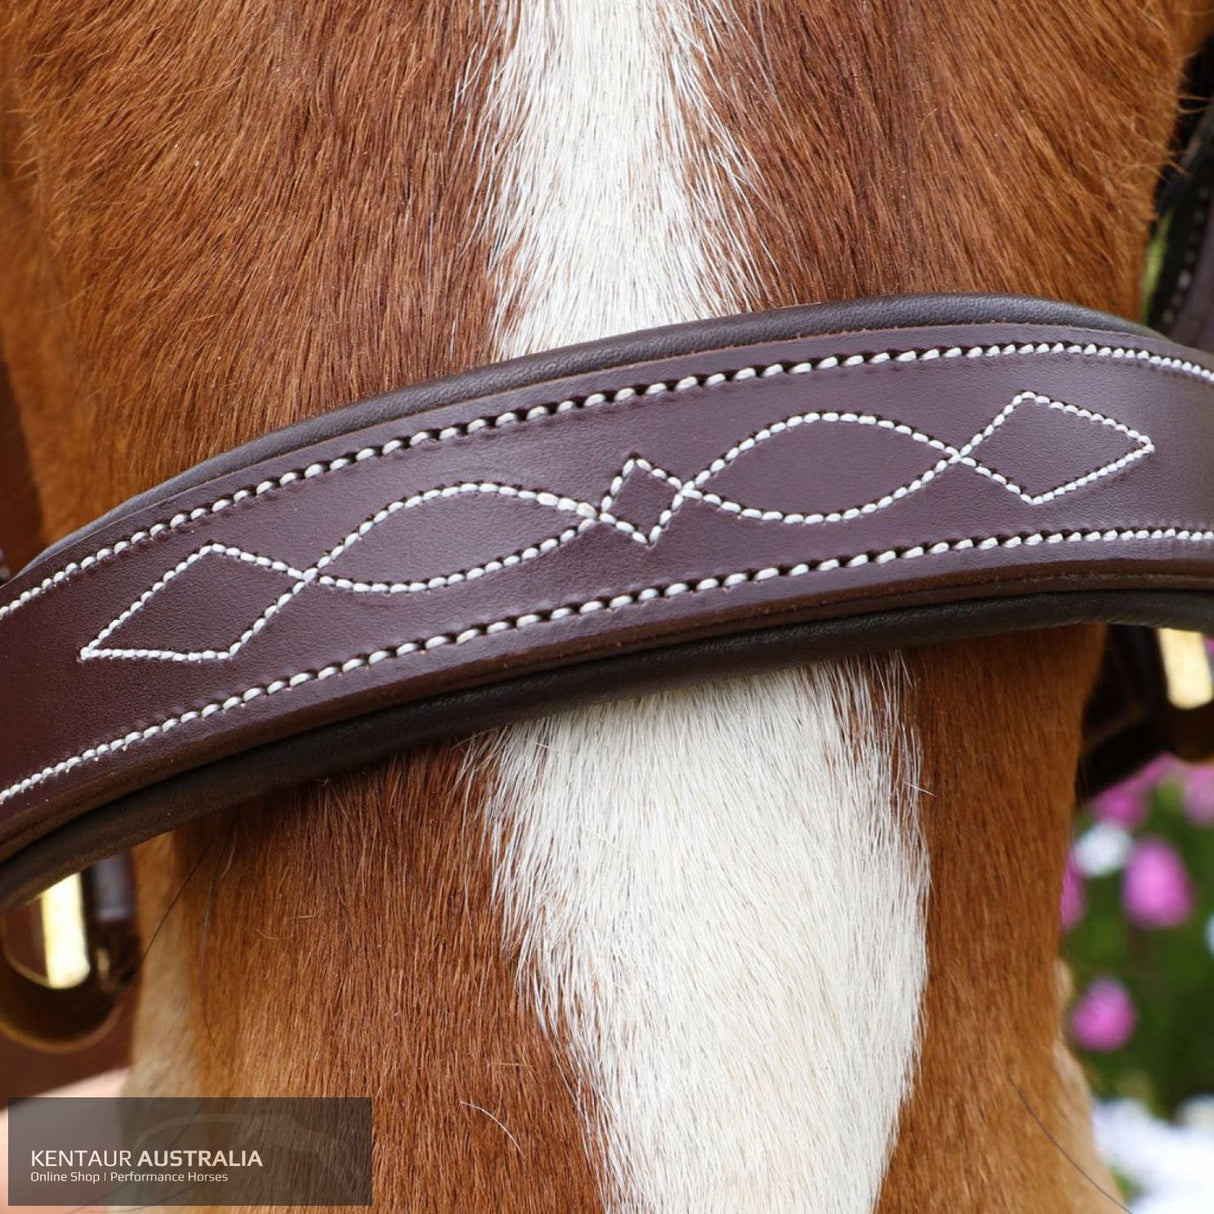 Kentaur Leather Halter with Stitching